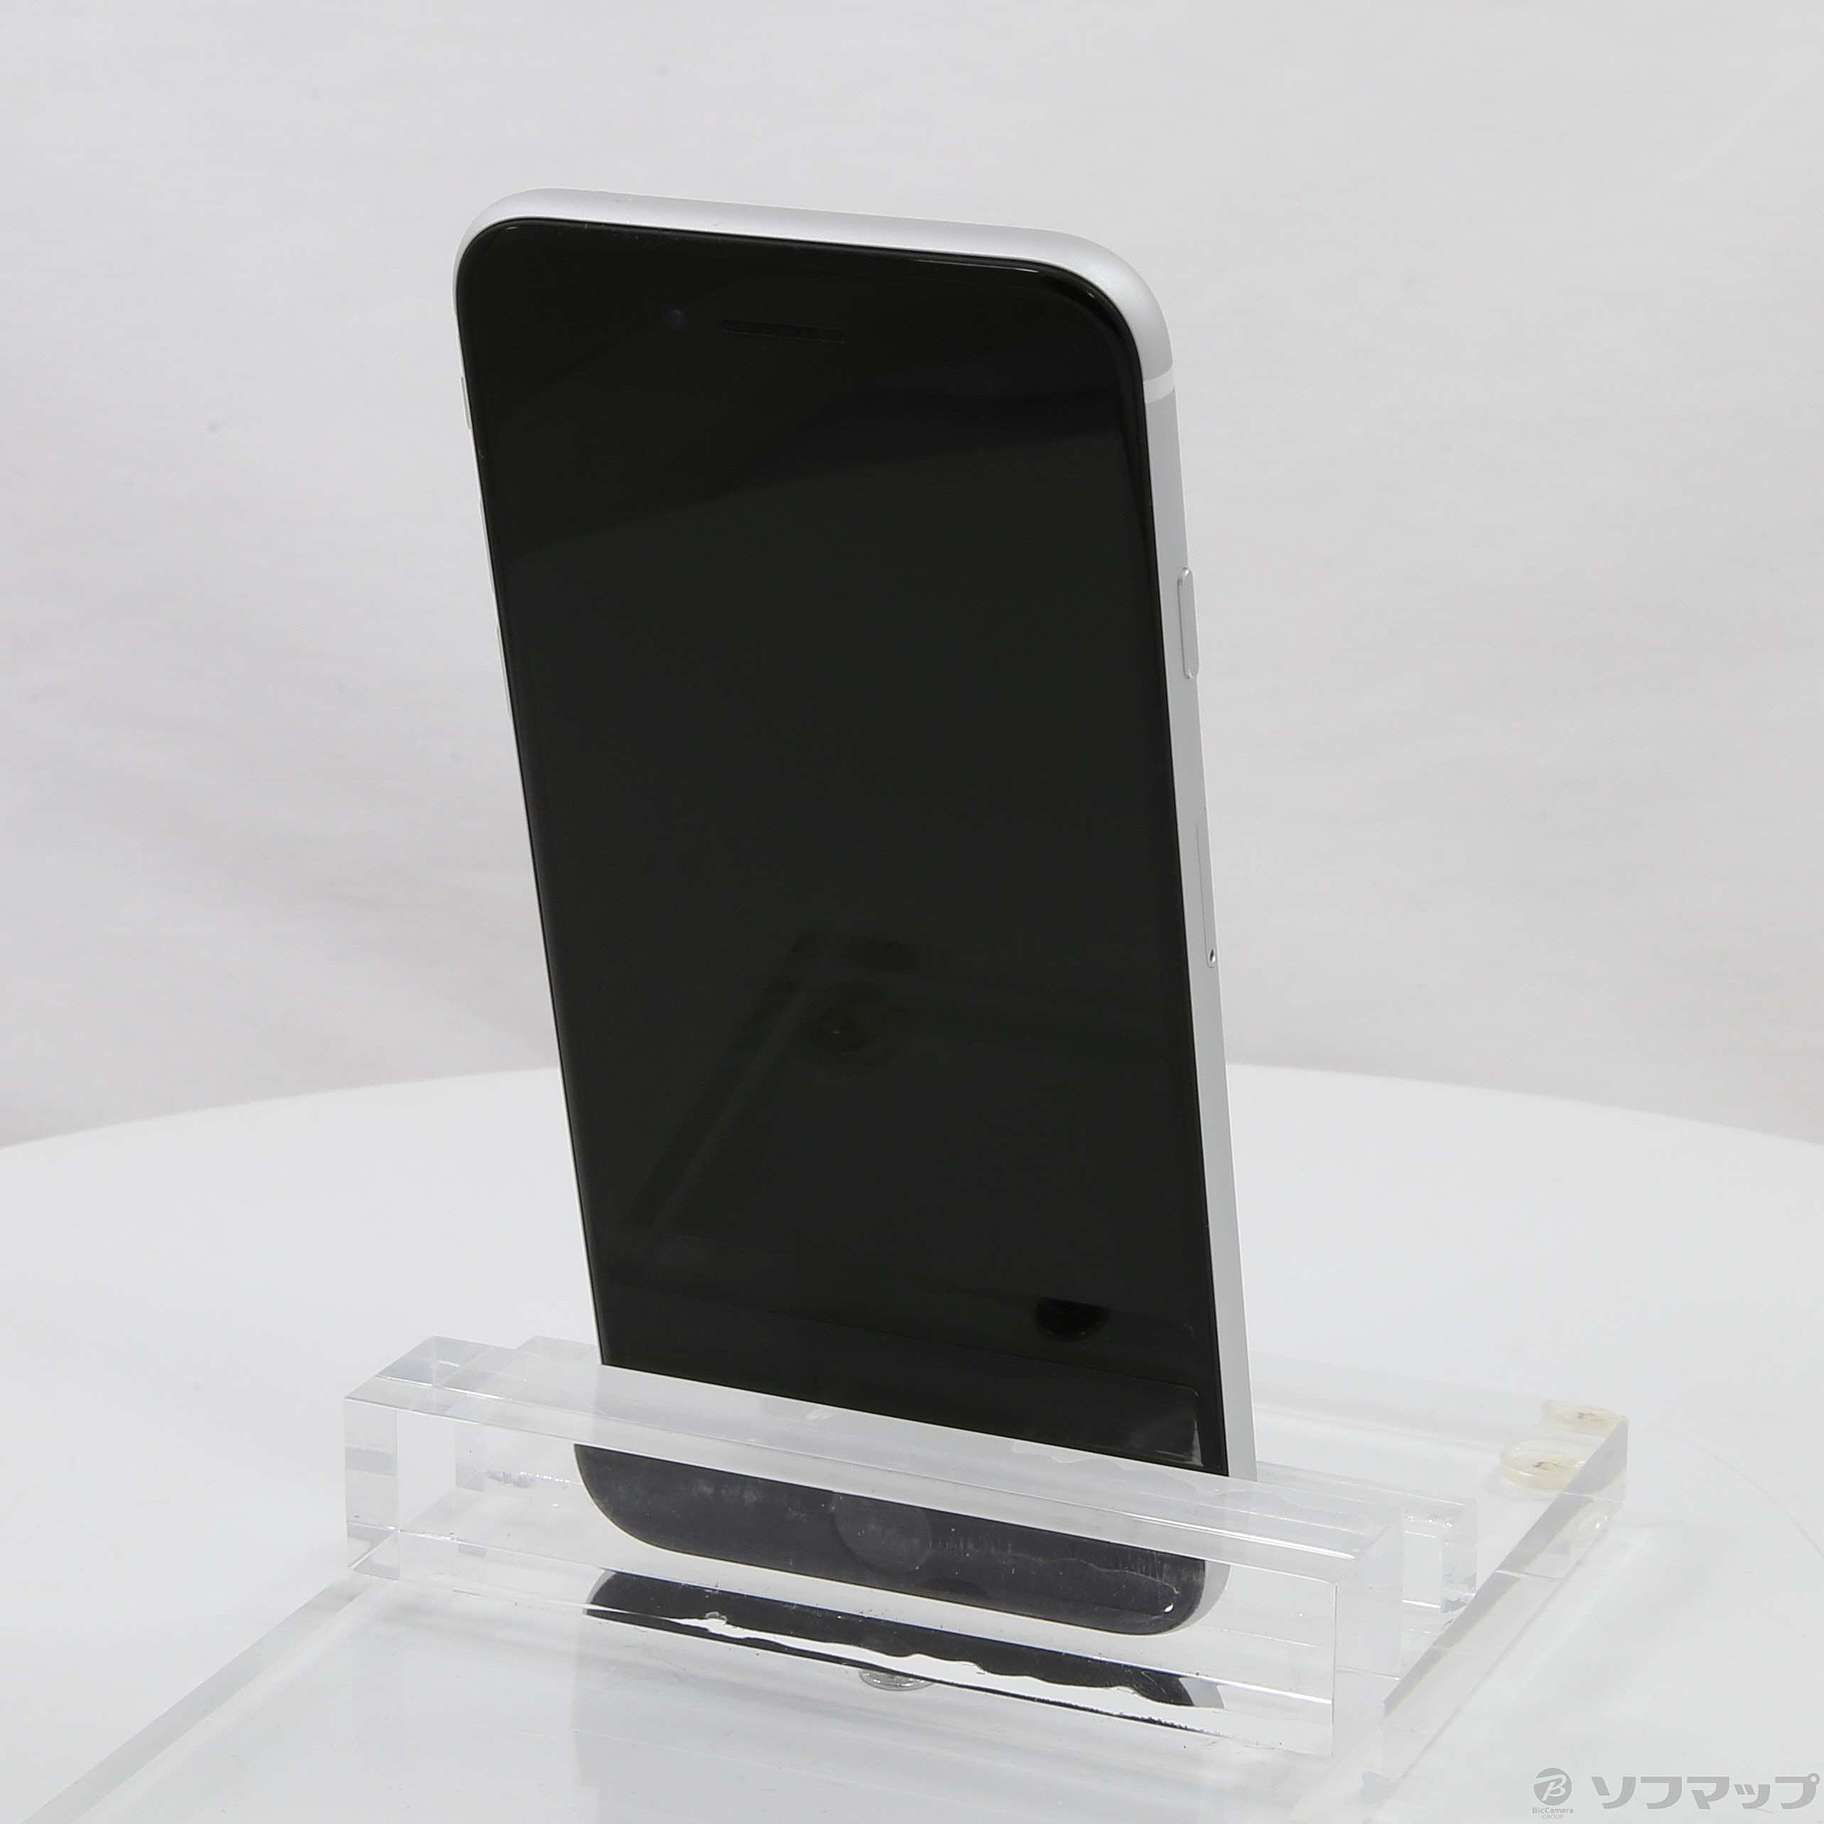 純正 買取 【美品】iPhone SE 第2世代 64GB SIMフリー ホワイト オンライン買い物:15806円 ブランド:アップル  スマートフォンの本体